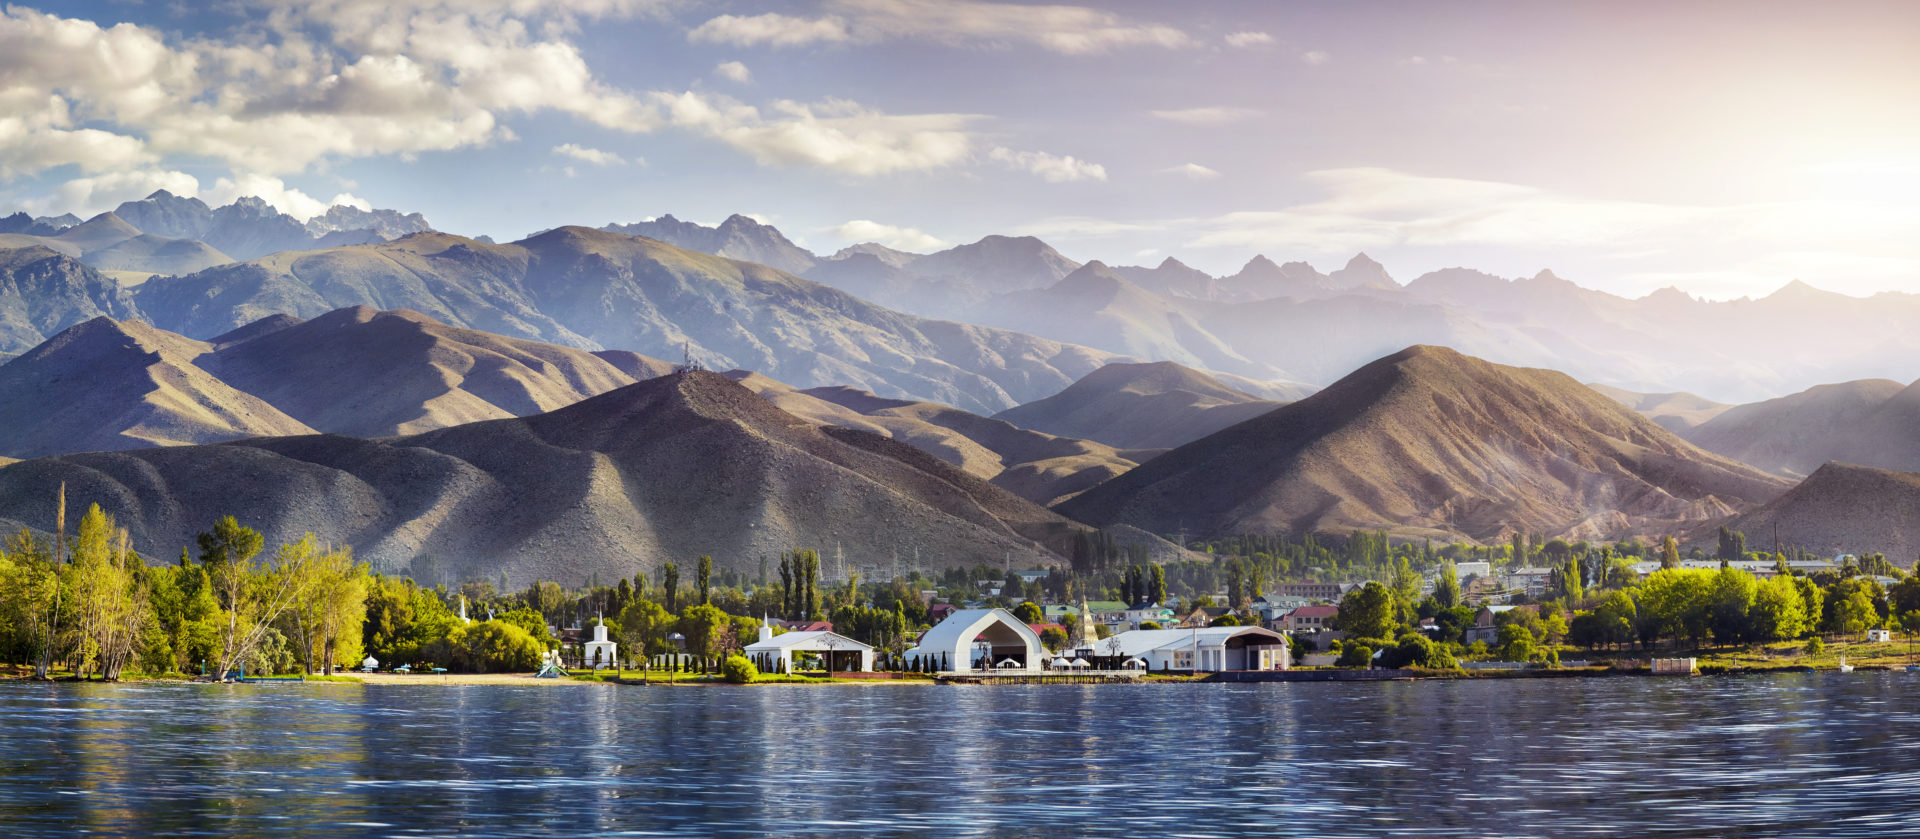 Ruh Ordo Kulturkomplex am Ufer des Issyk Kul Sees vor dem Hintergrund der Berge in Cholpon Ata, Reise nach Kirgisistan.